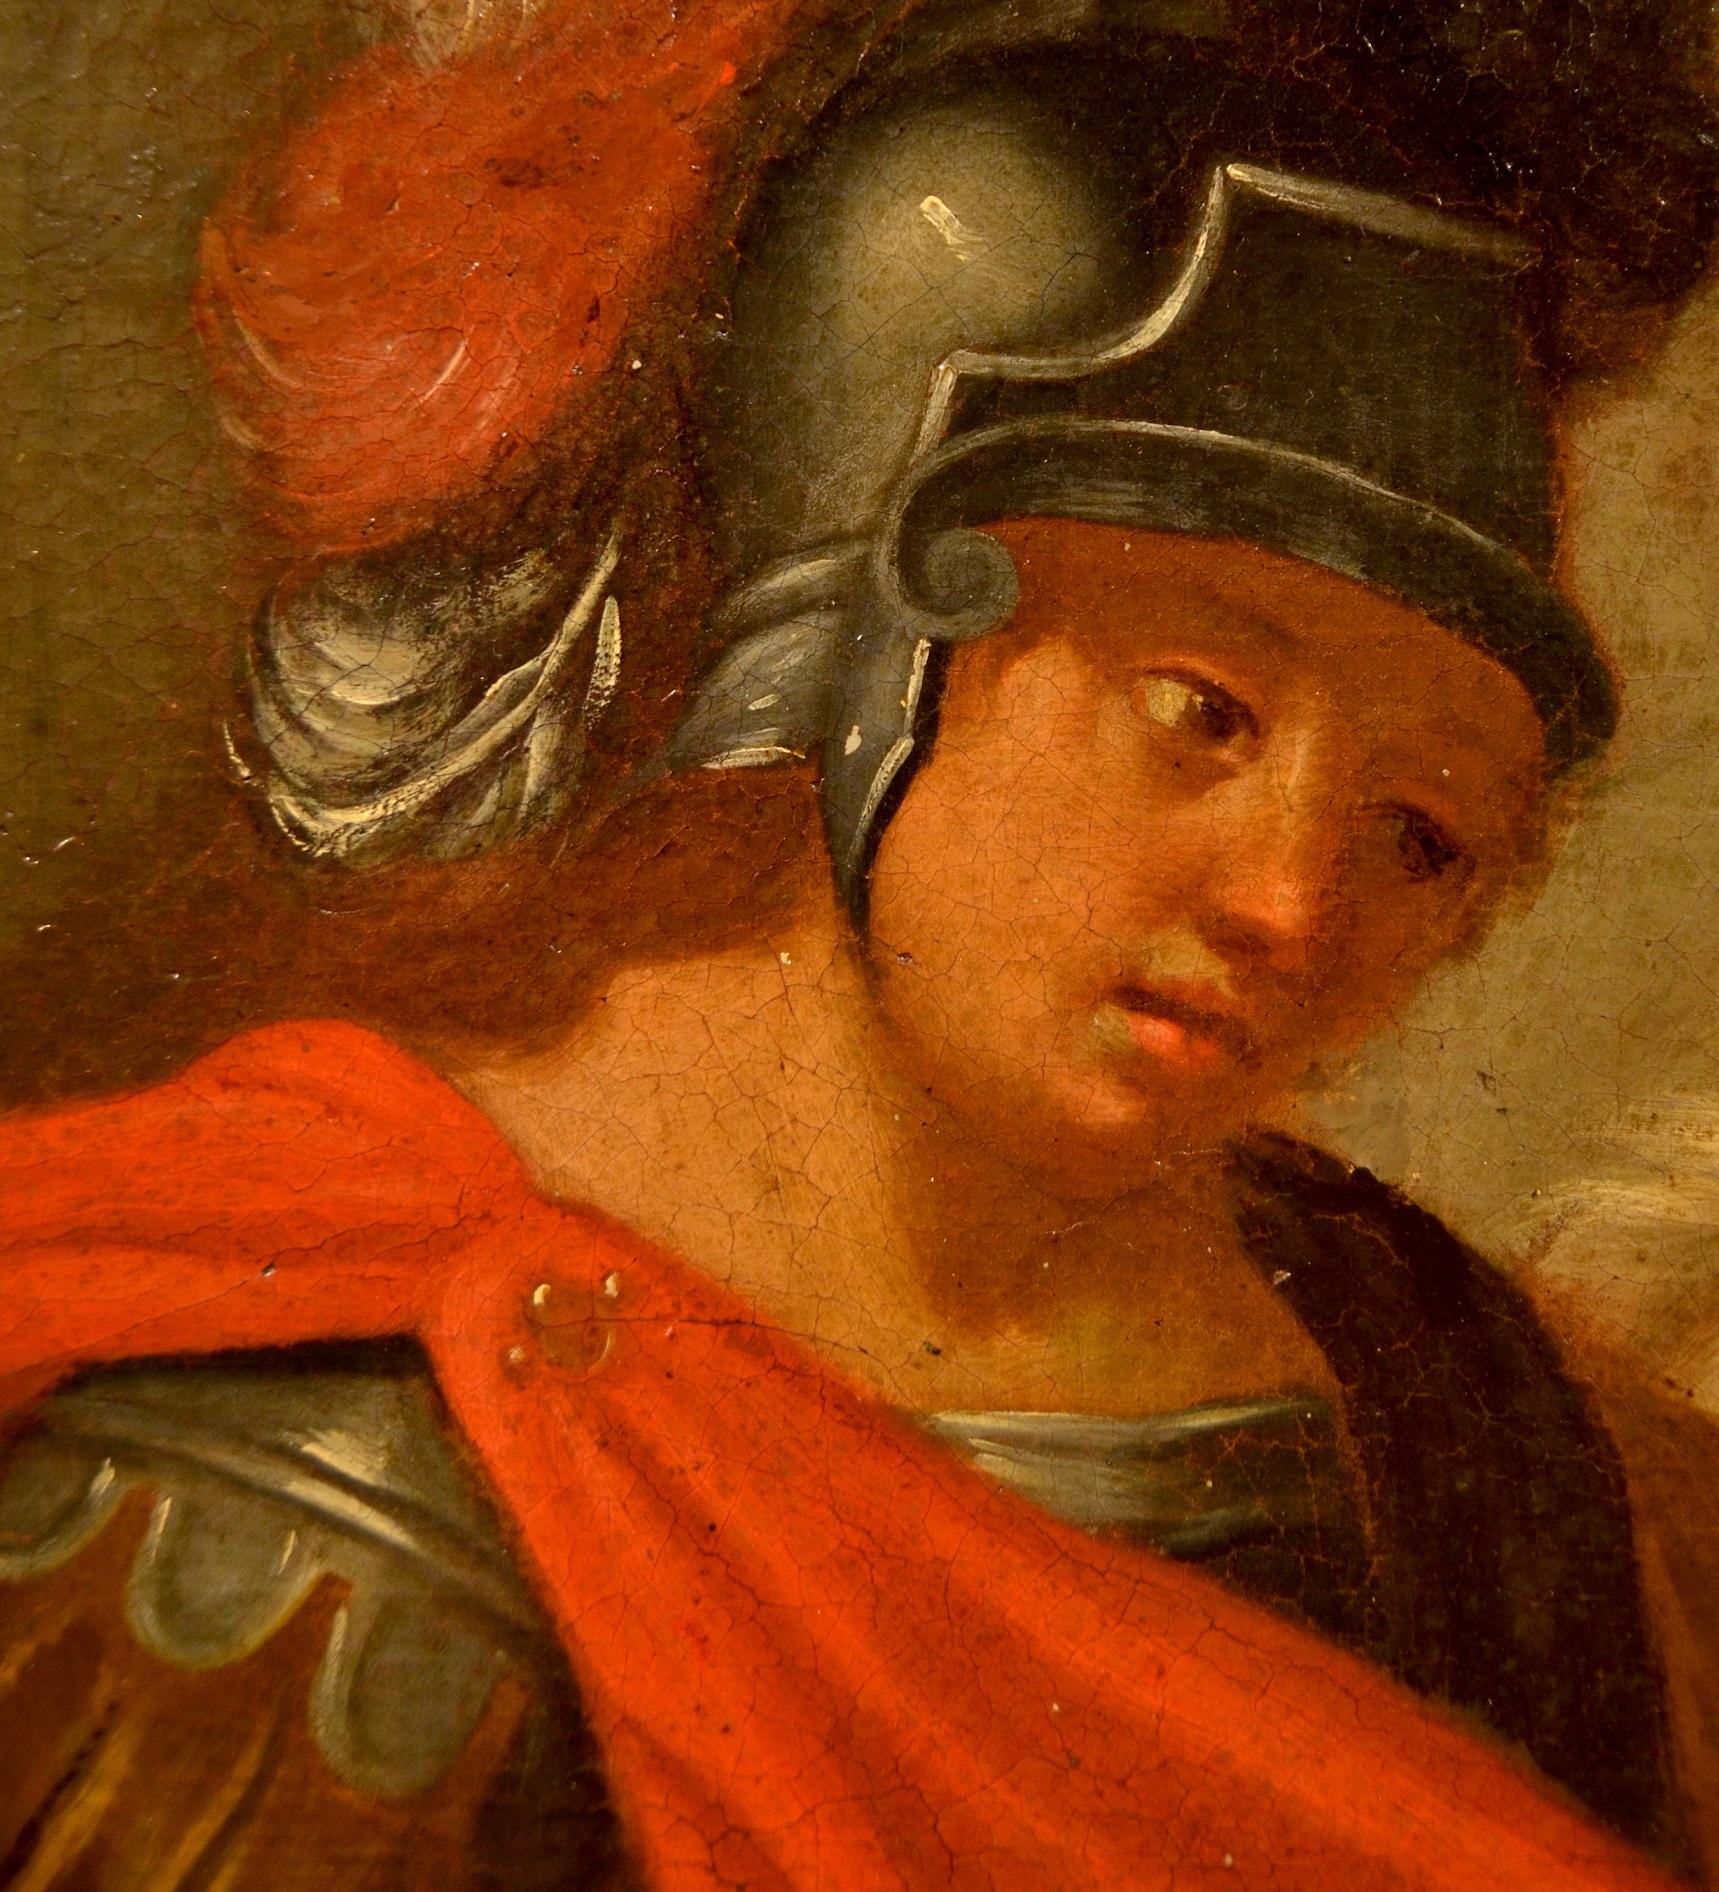 Saint Martin Paint Oil on canvas 17th Century Italian school Old master Baroque 2